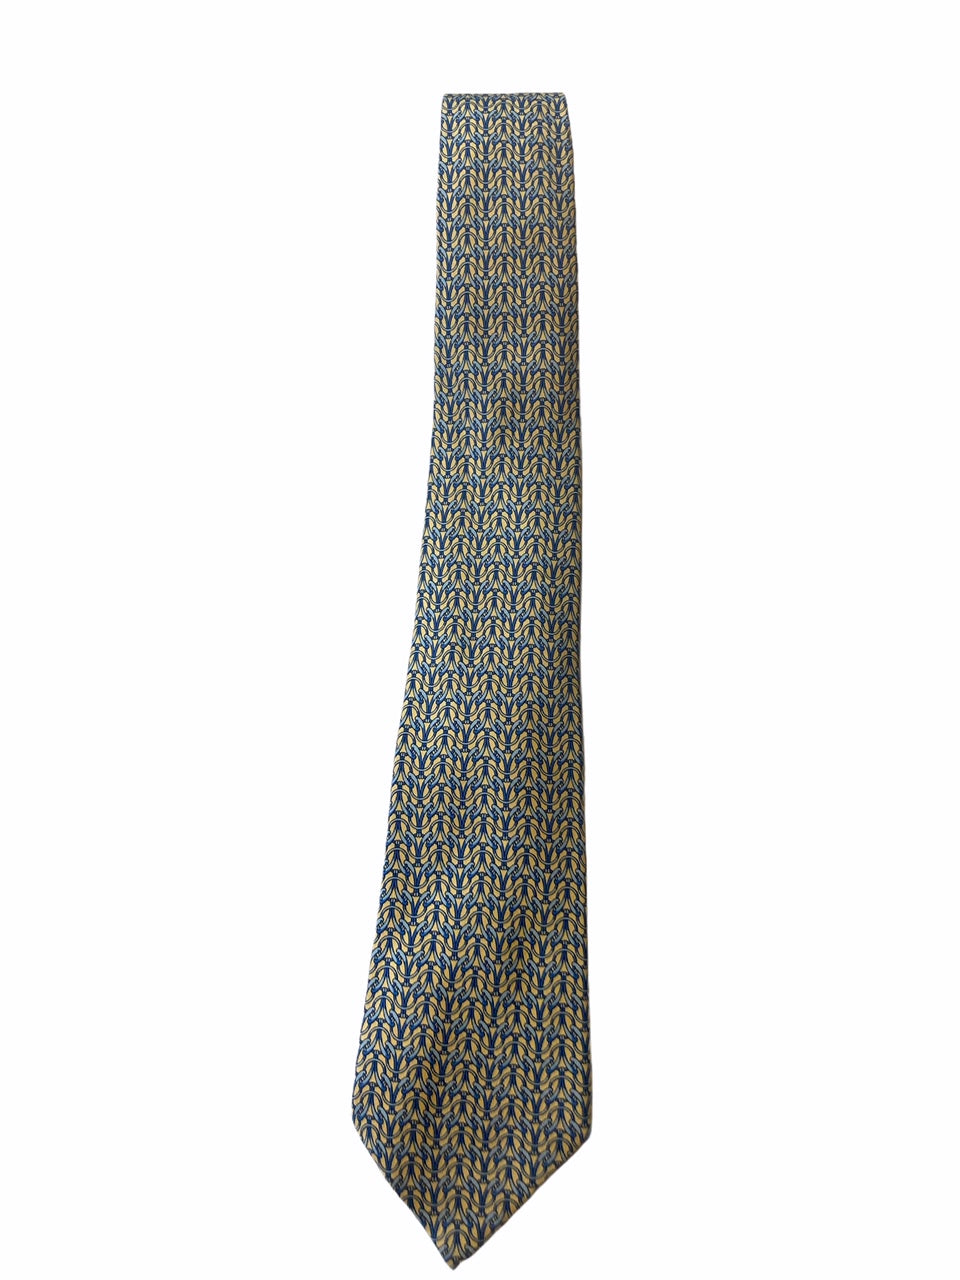 Vintage Hermes Silk Tie